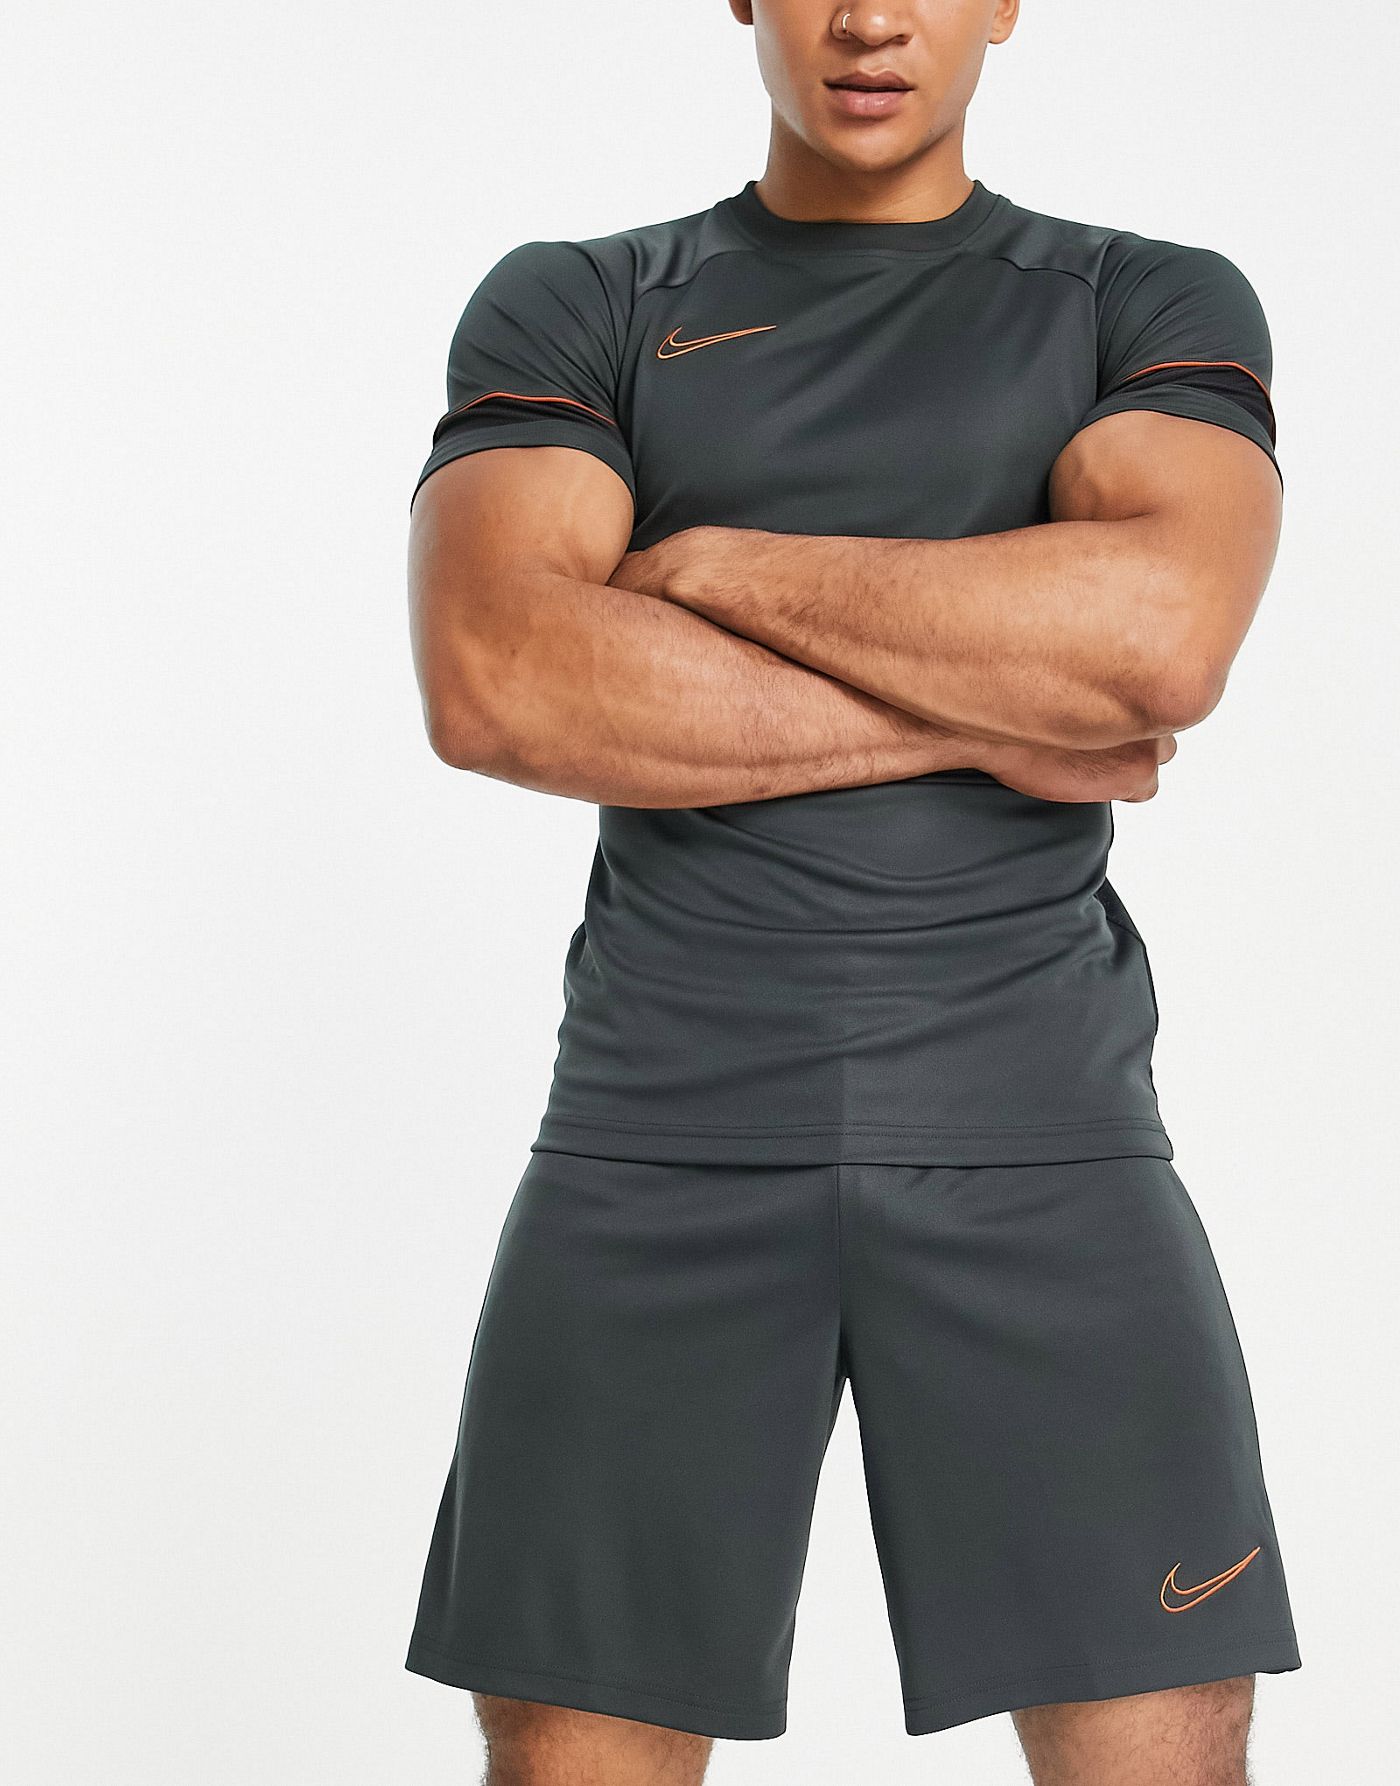 Nike Football Academy Dri-FIT t-shorts in dark grey